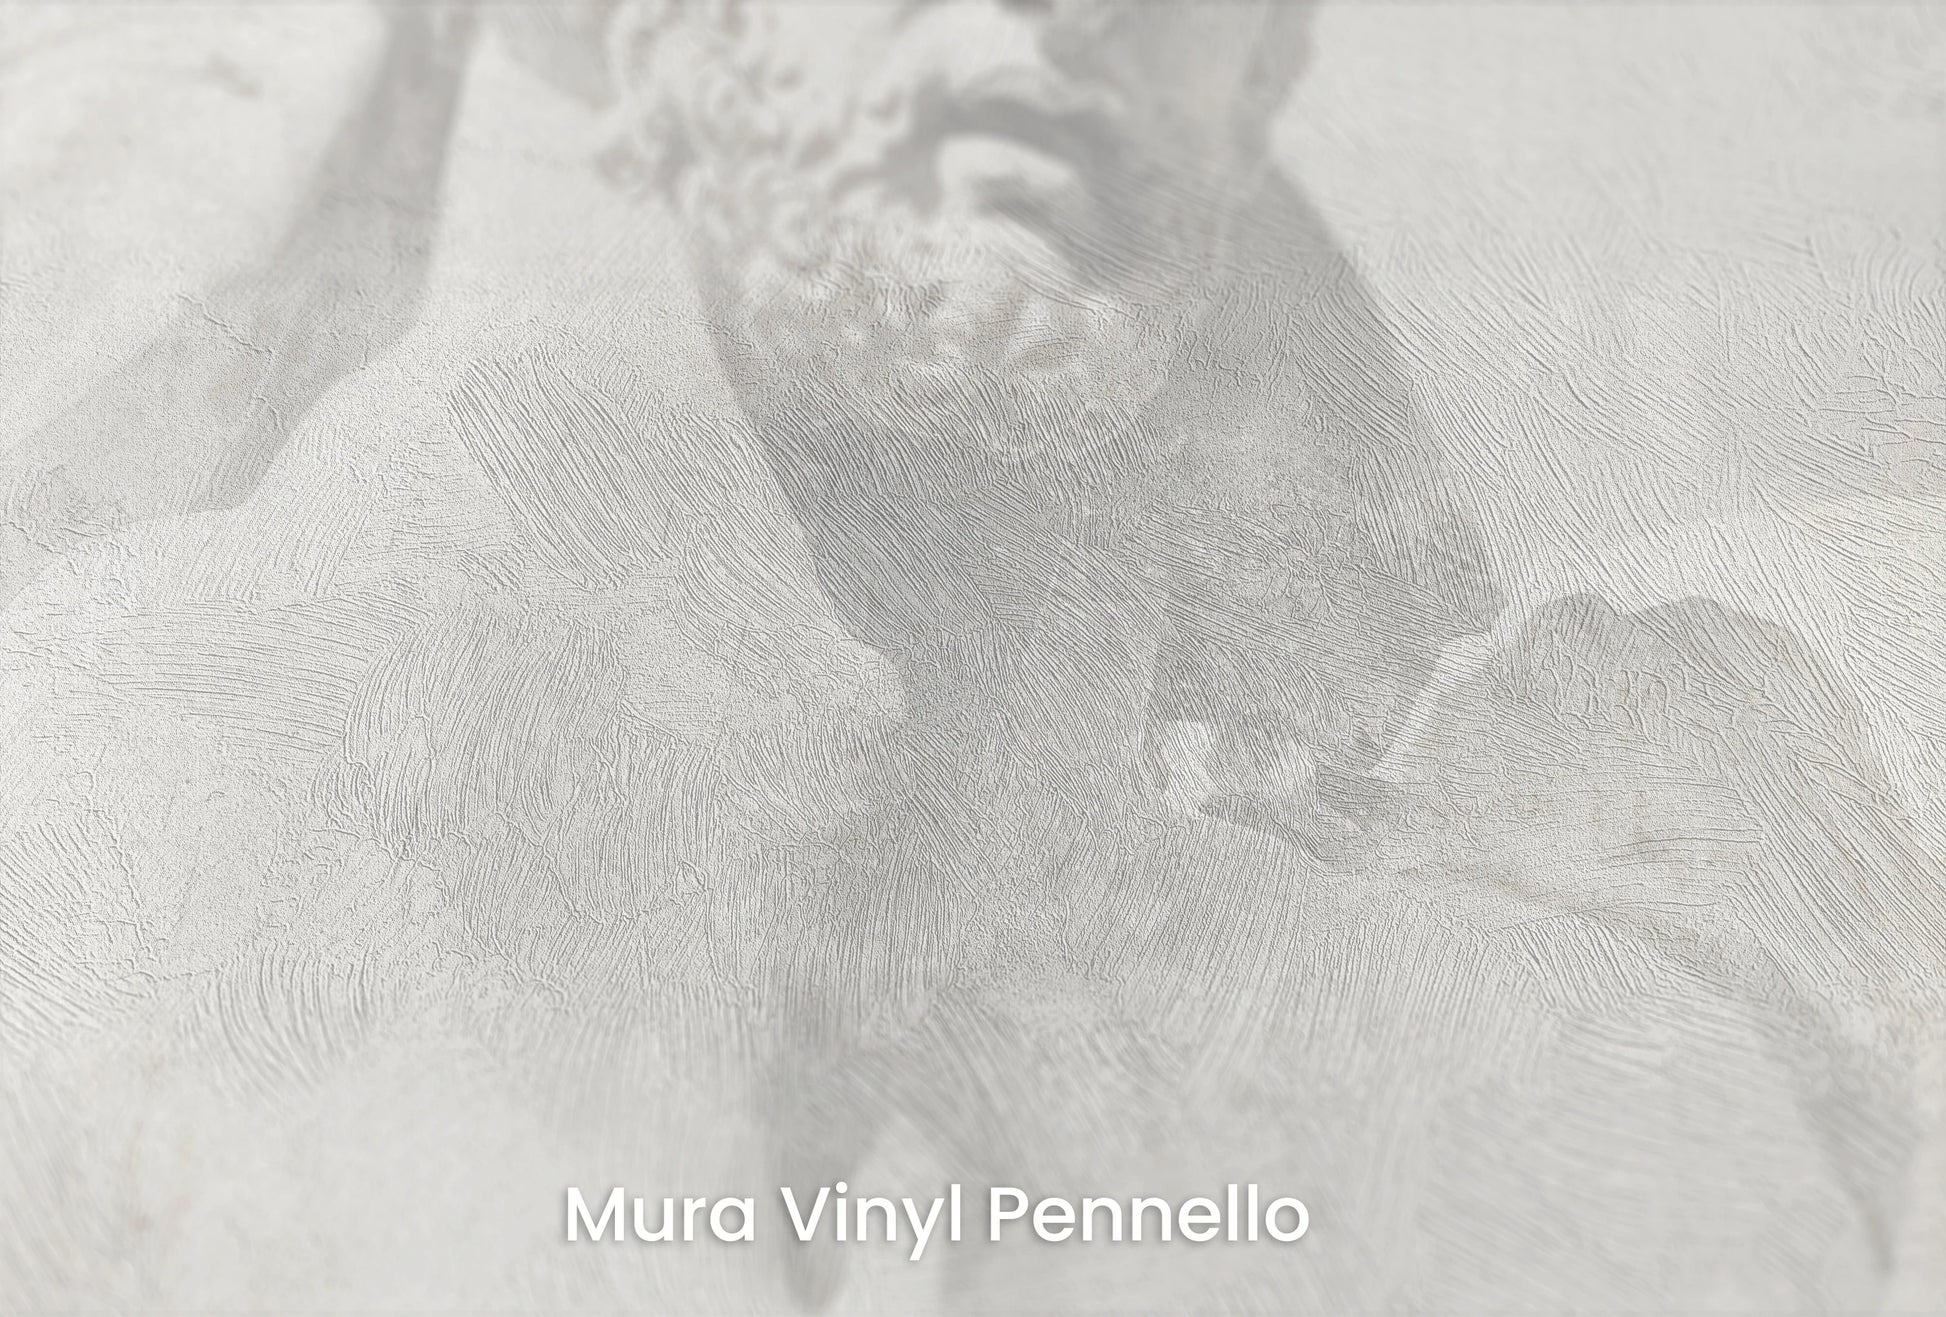 Zbliżenie na artystyczną fototapetę o nazwie Apollo's Gaze na podłożu Mura Vinyl Pennello - faktura pociągnięć pędzla malarskiego.